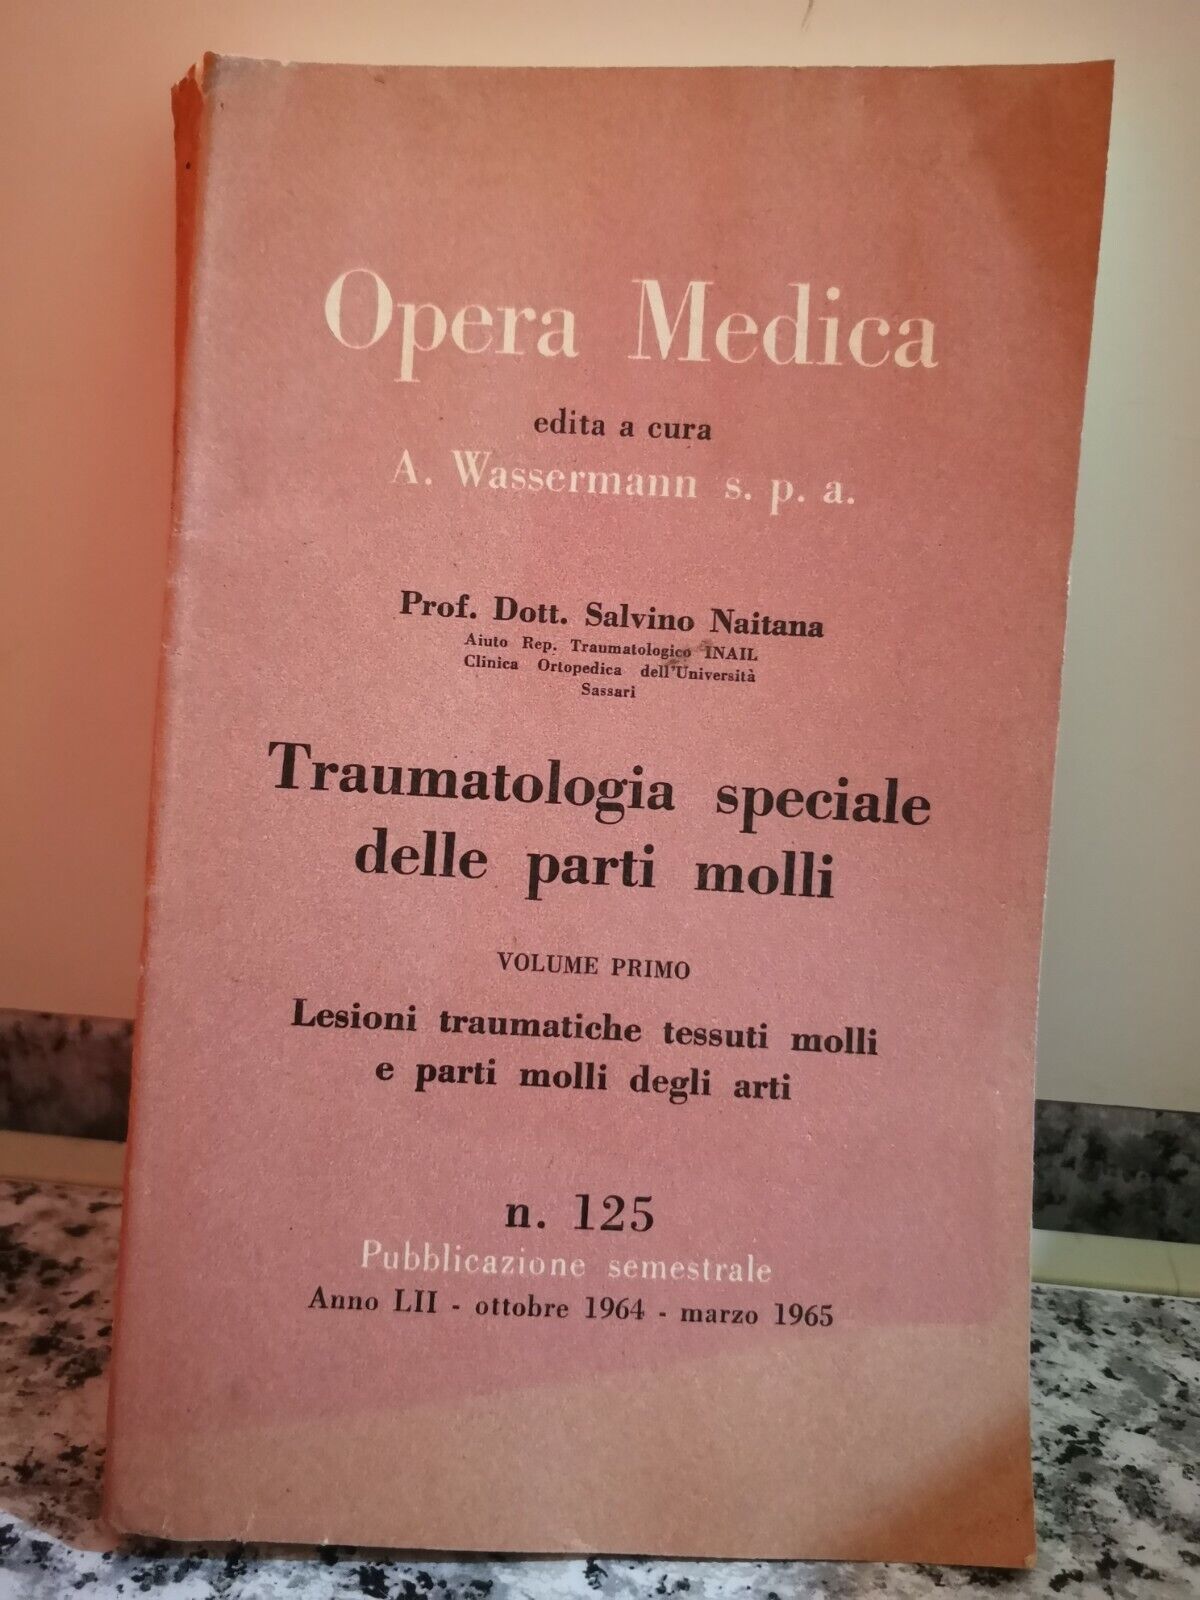 Traumatologia speciale delle parti molli n 125 Vol 1? di Wassermann,  1965,  -F